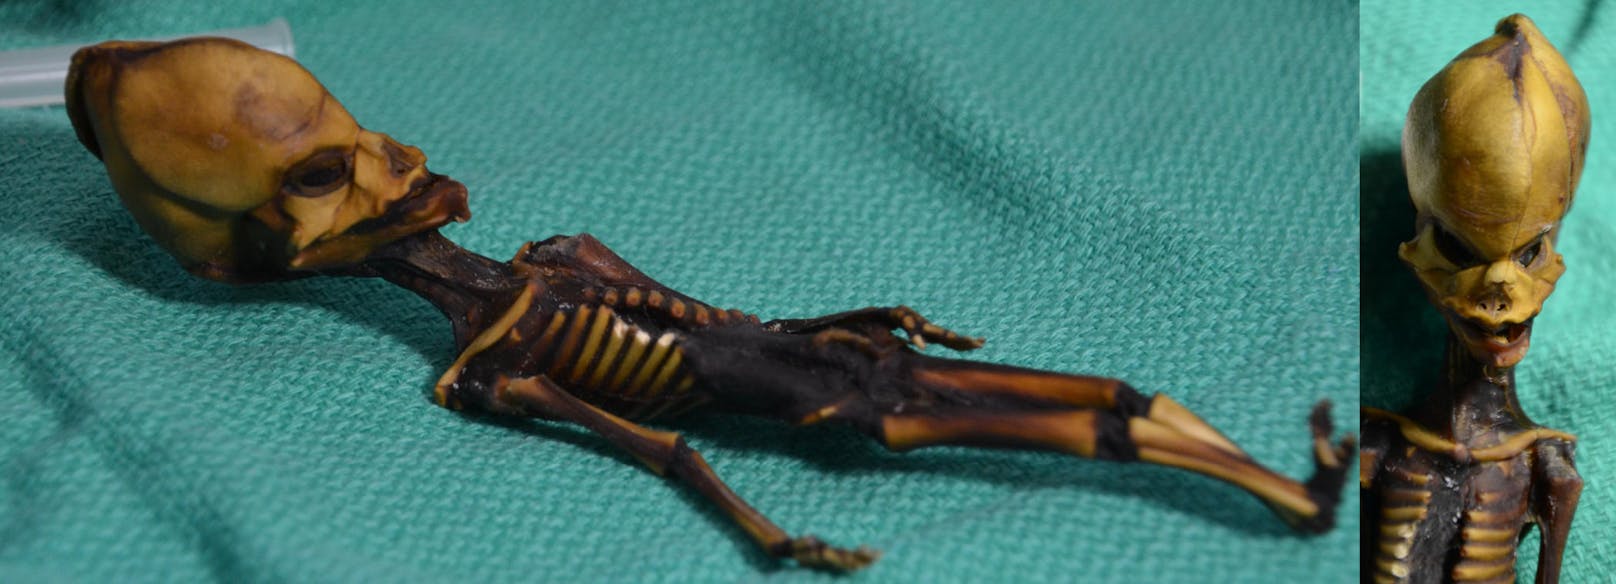 Die handgroße Mini-Mumie aus der Atacama-Wüste wurde nach ihrem Fundort "Ata" genannt. Die DNS-Analyse zeigte nun, dass es sich um einen Menschen handelt.